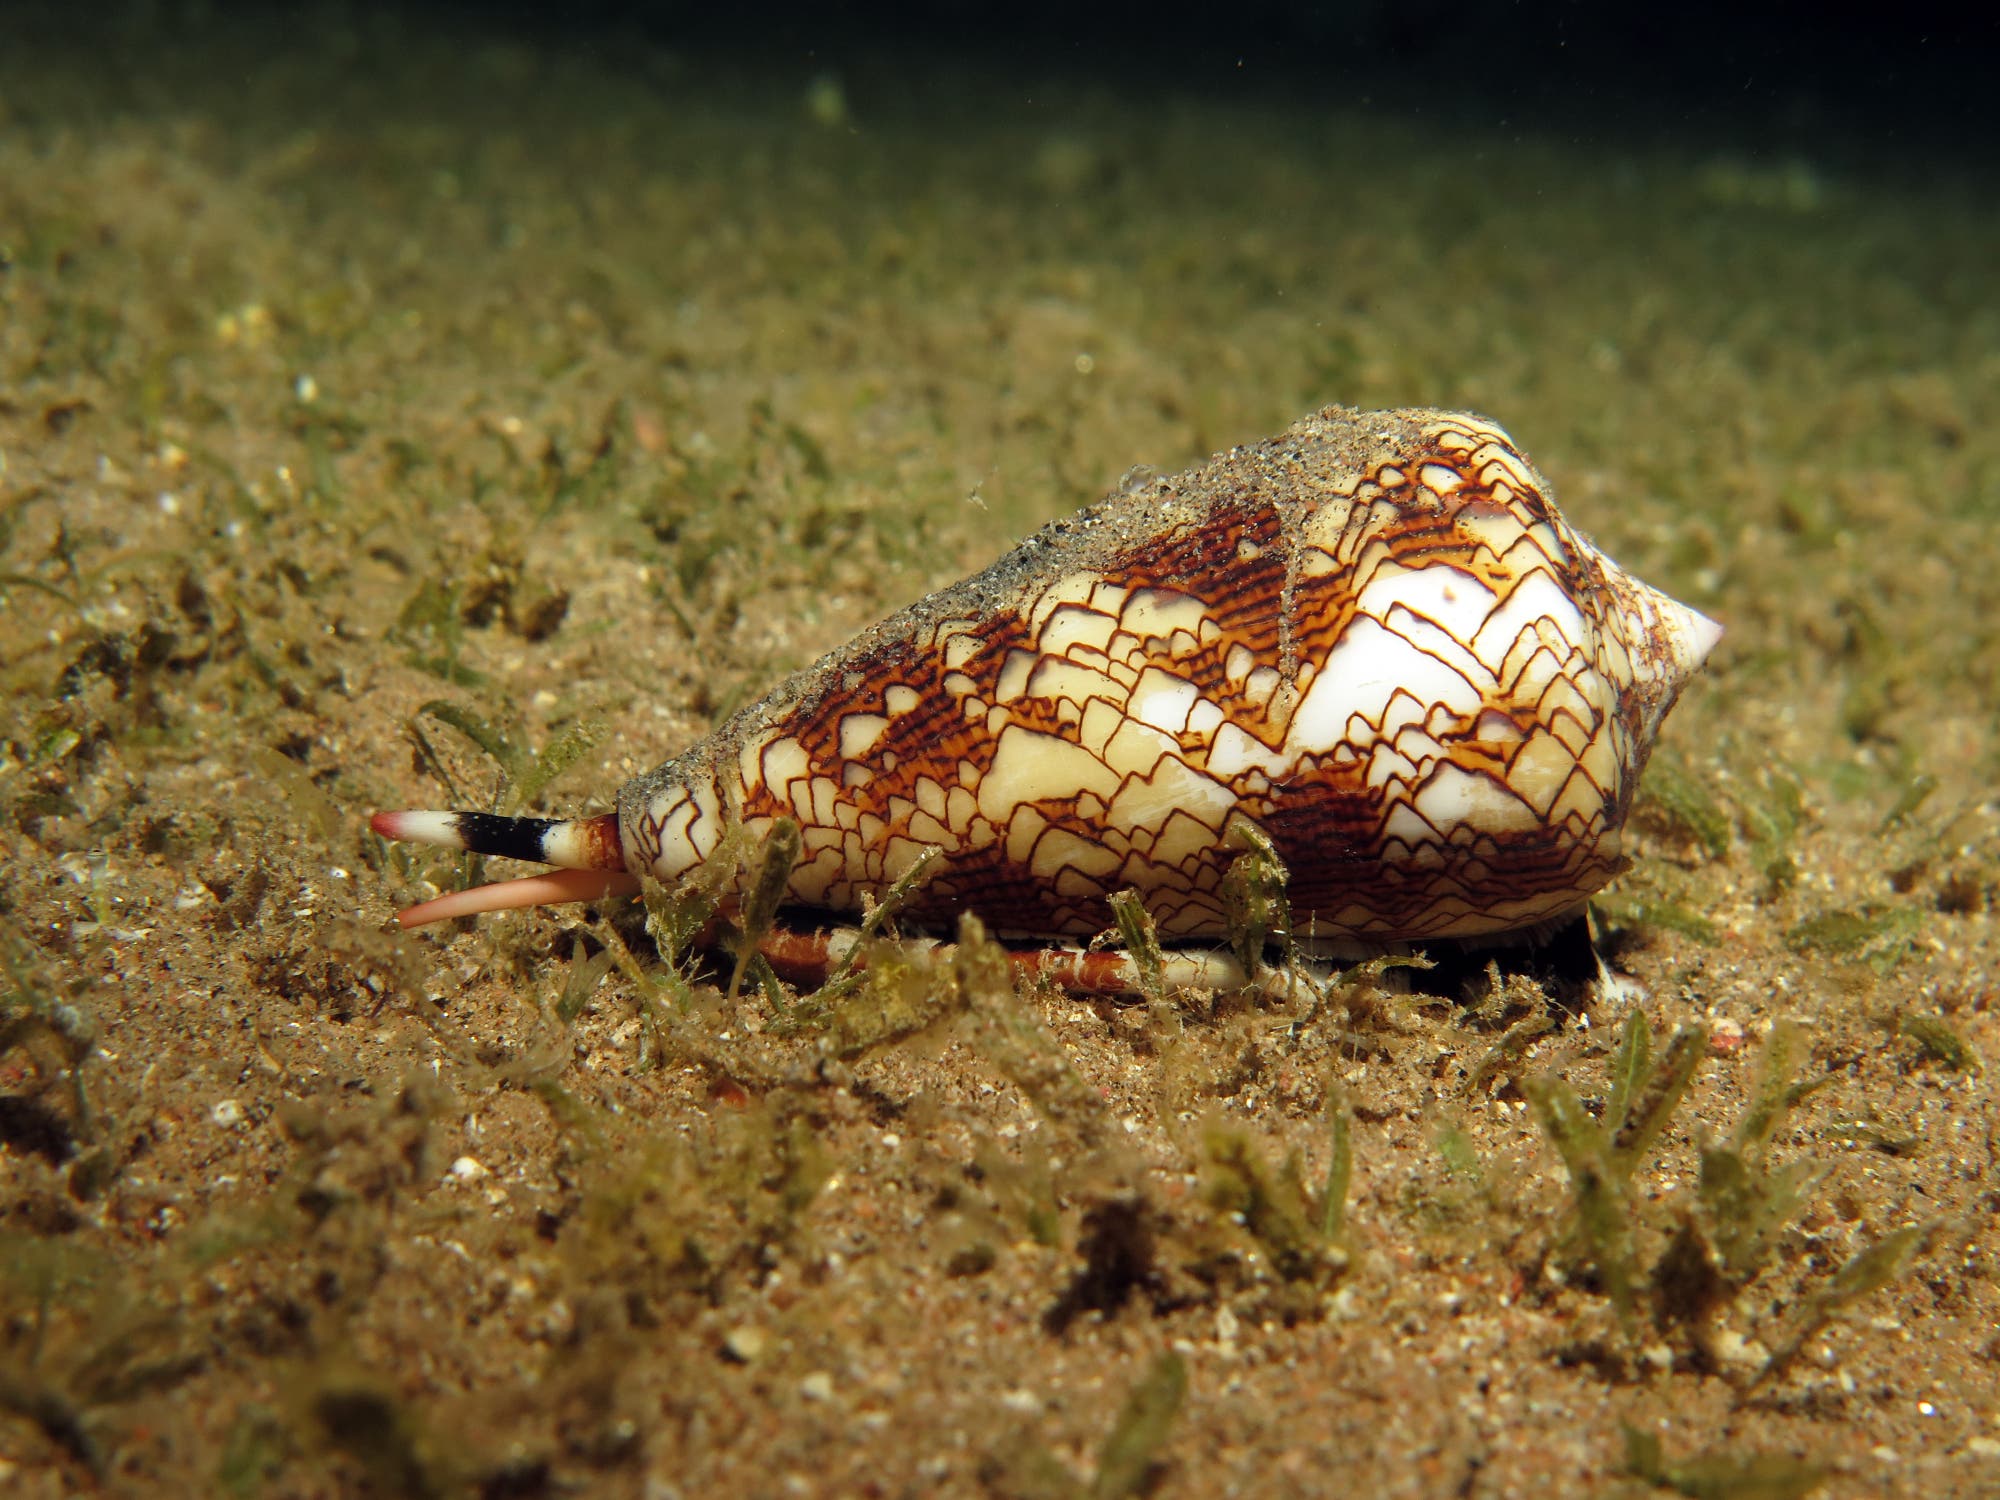 Eine hübsche Meeresschnecke mit einem braun-weiß gemusterten Gehäuse